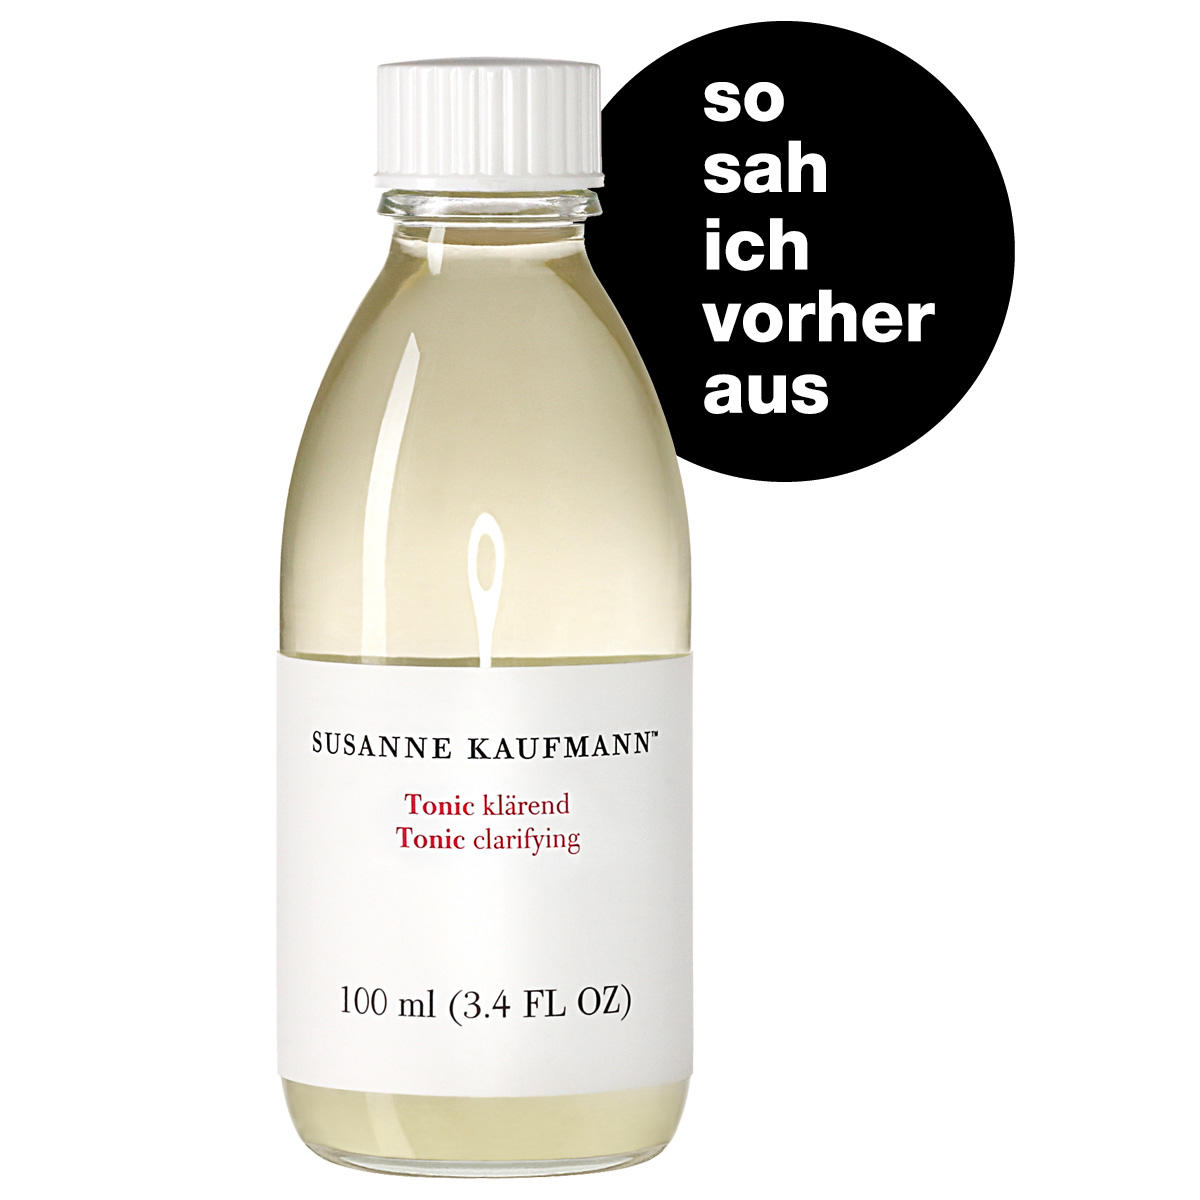 Susanne Kaufmann Tonic klärend - Purifying Toner 100 ml - 5